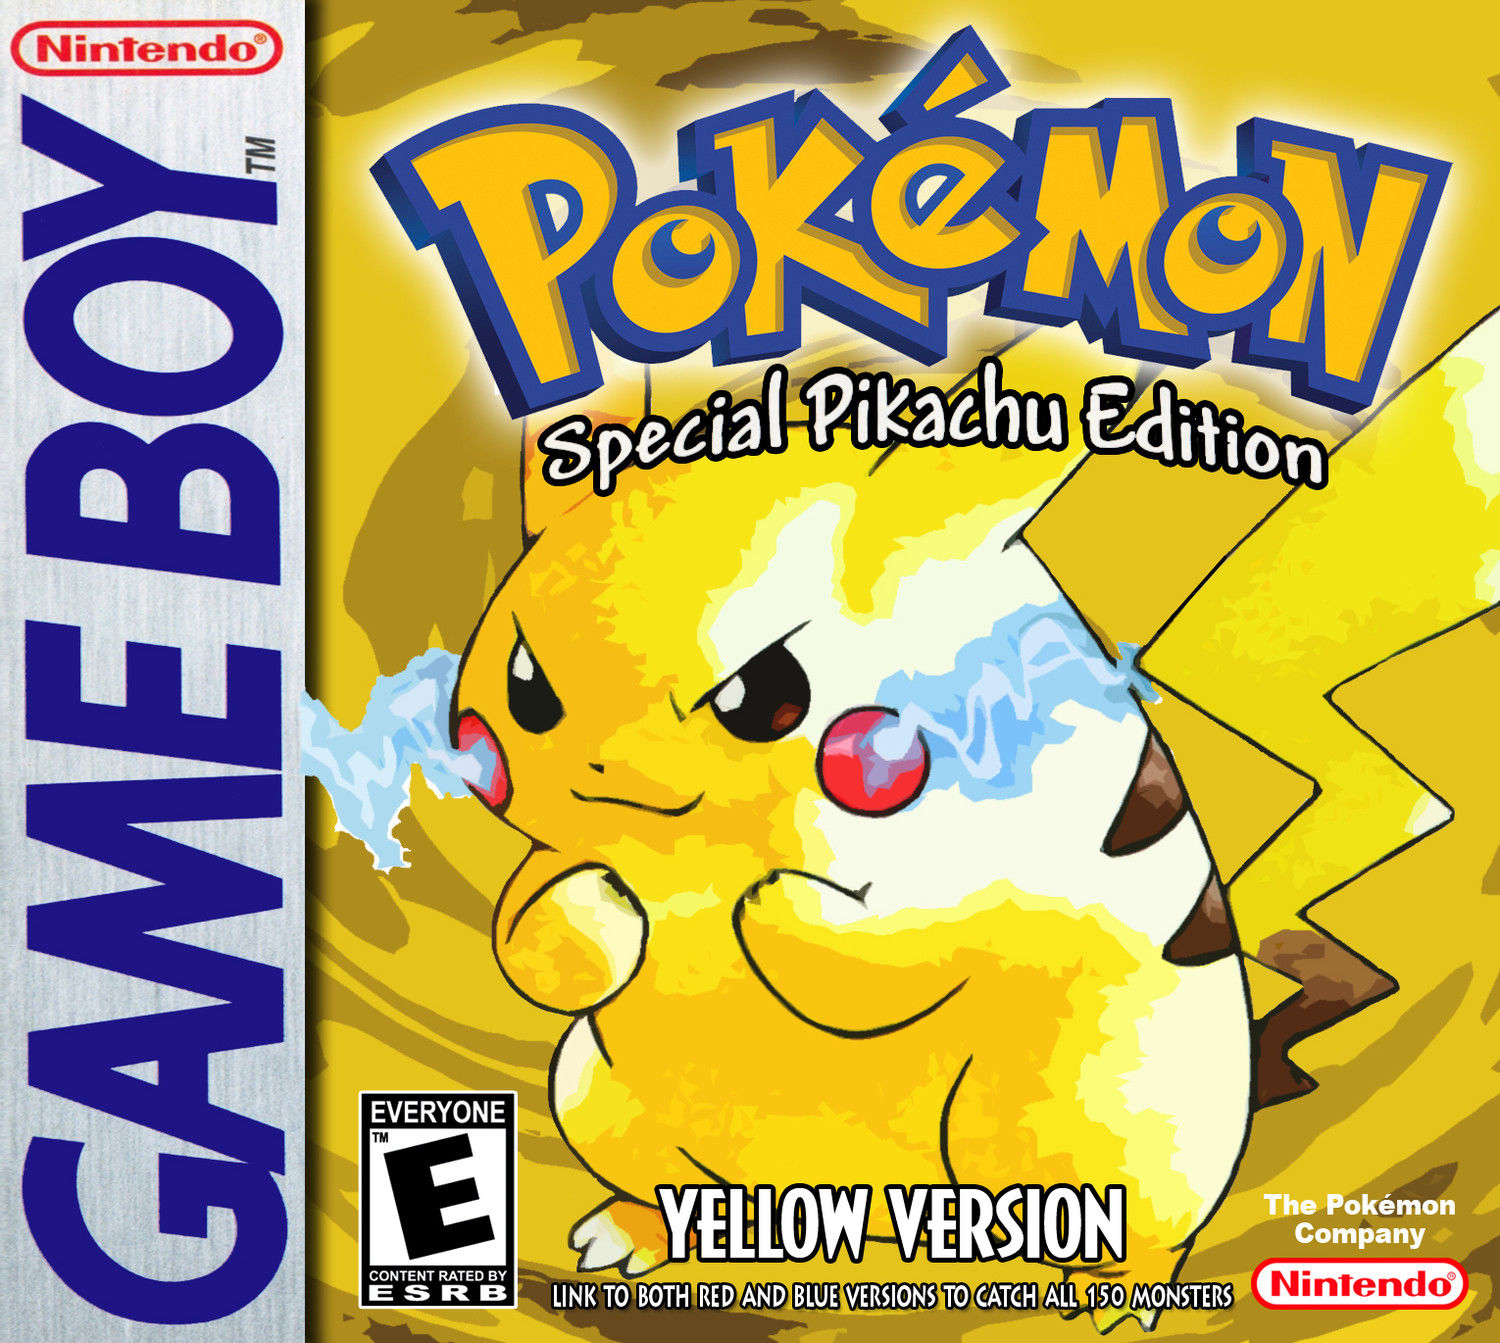 Pokémon Yellow Version Special Pikachu Edition Nintendo